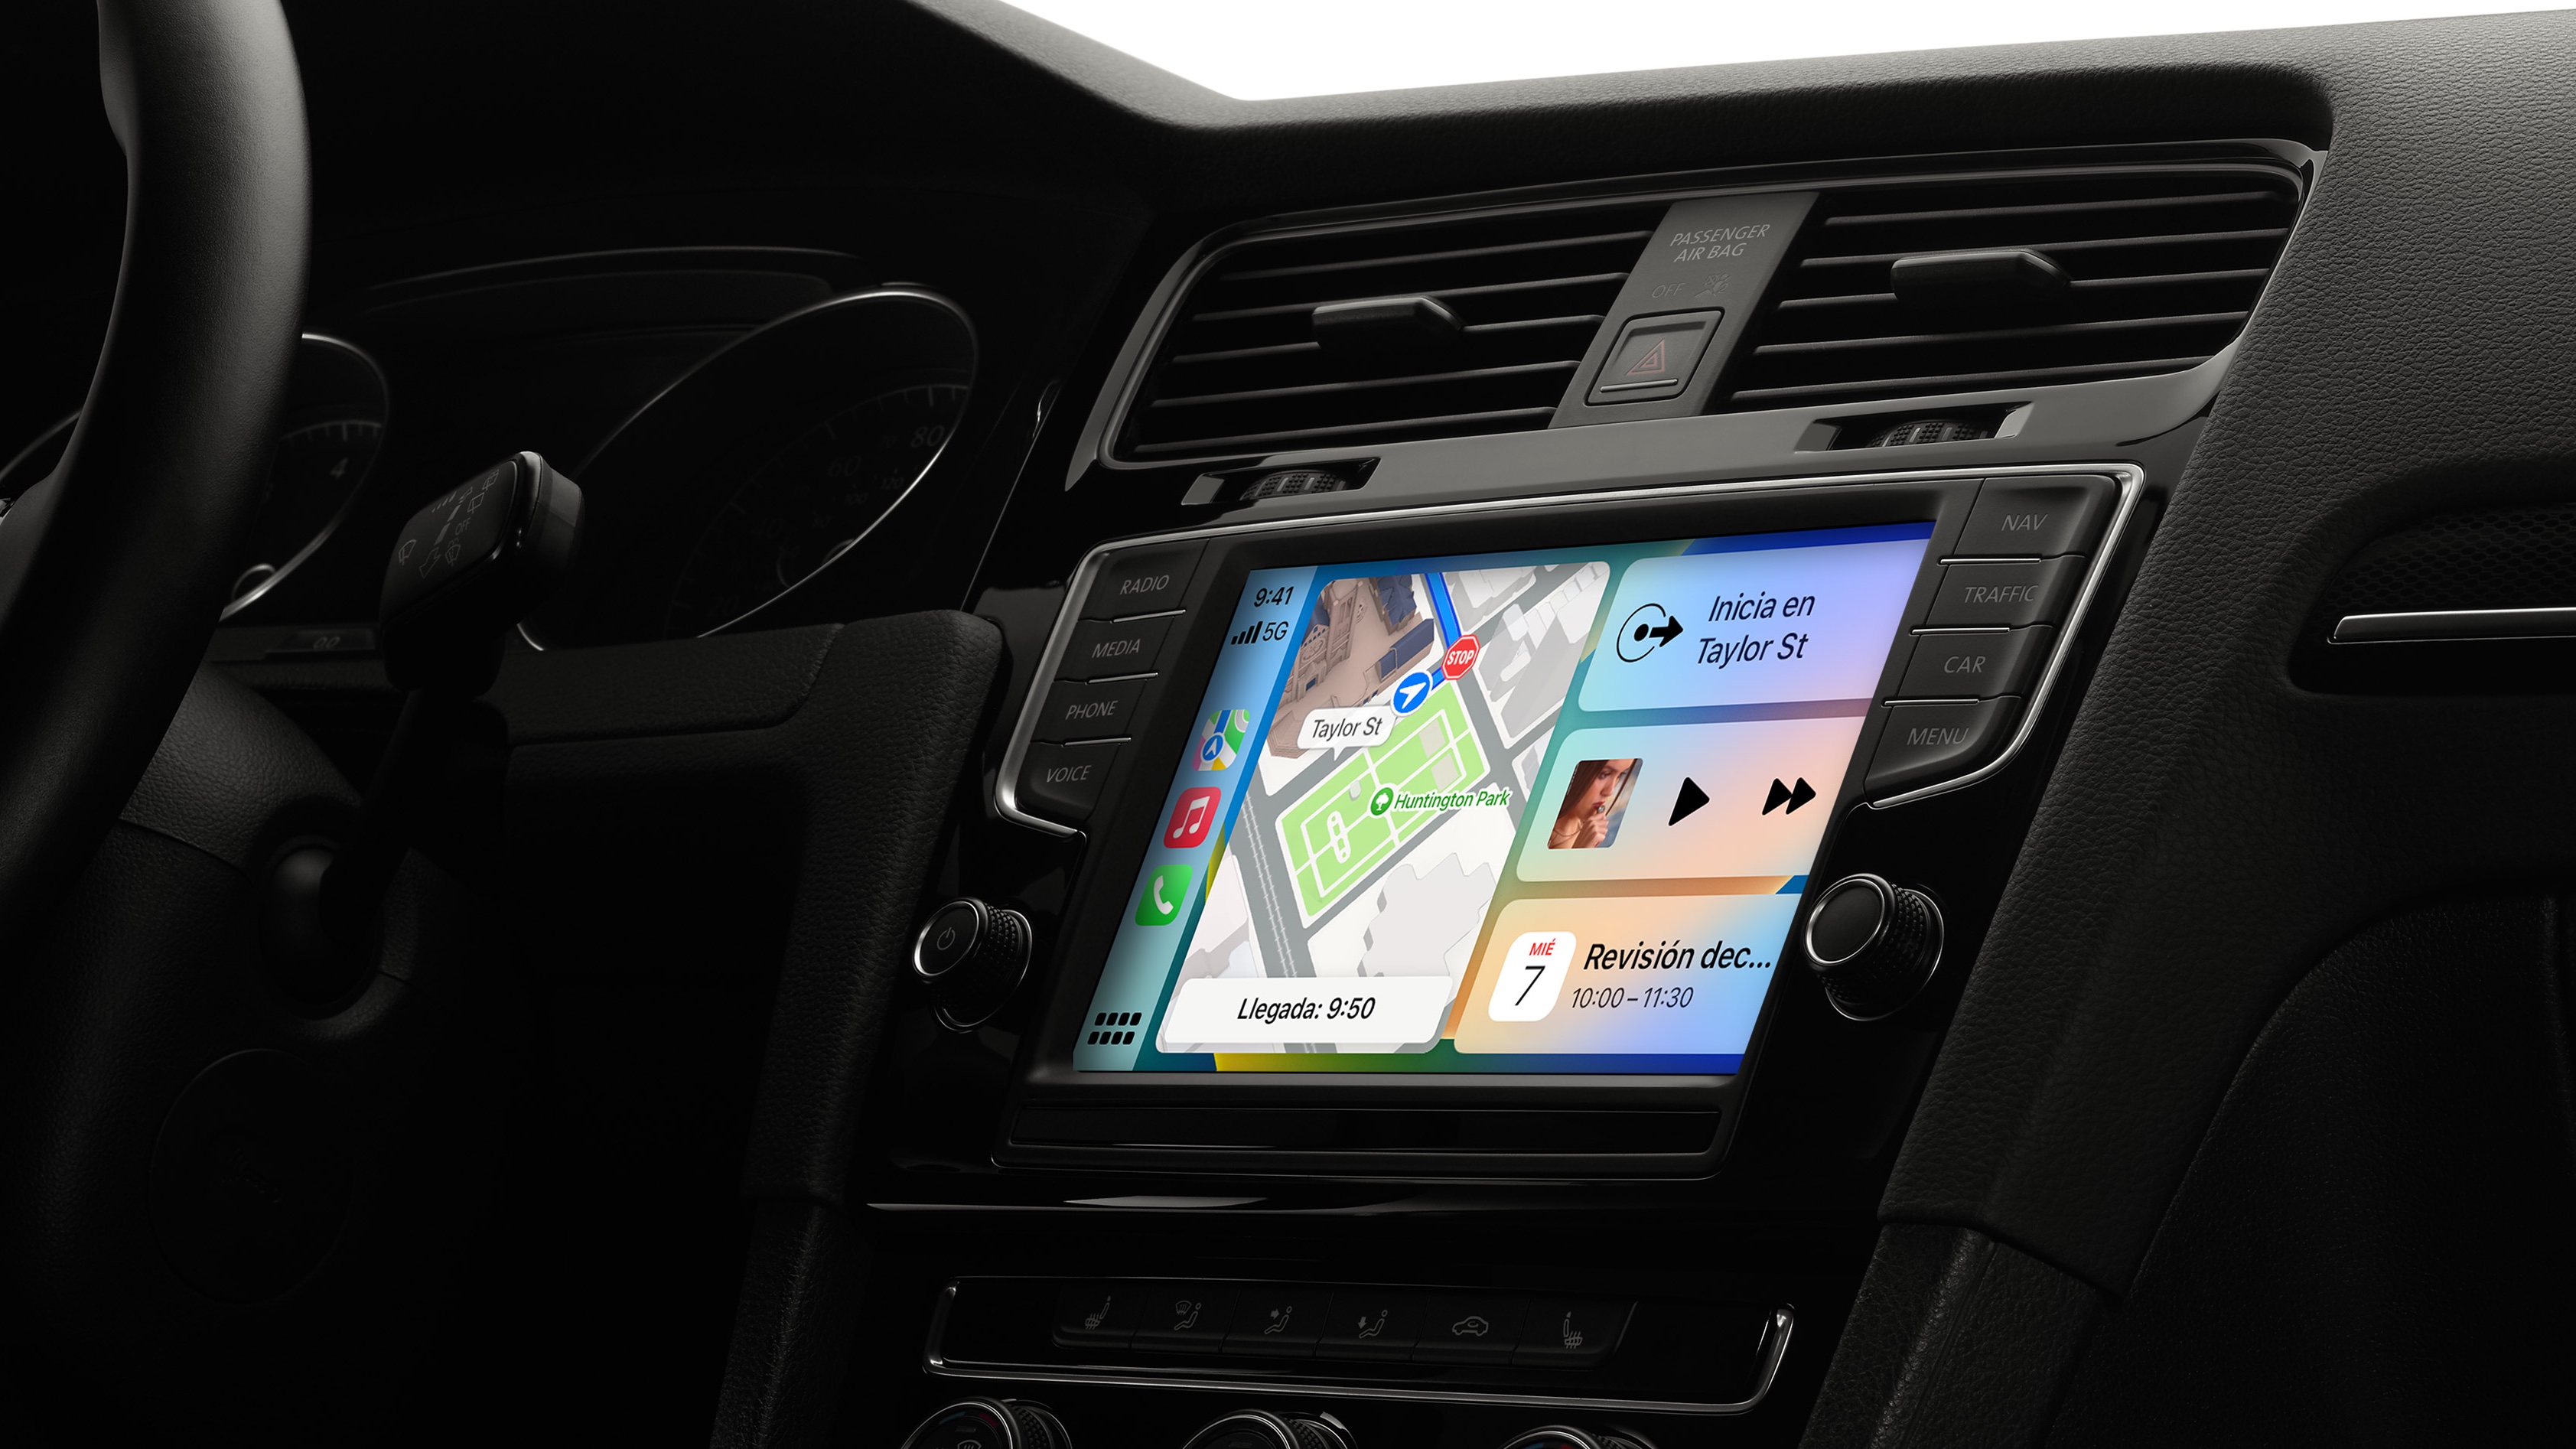 9 pulgadas pantalla táctil coche estéreo doble DIN Apple Carplay Android  Auto coche Radio Bluetooth con cámara de respaldo micrófono FM receptor de